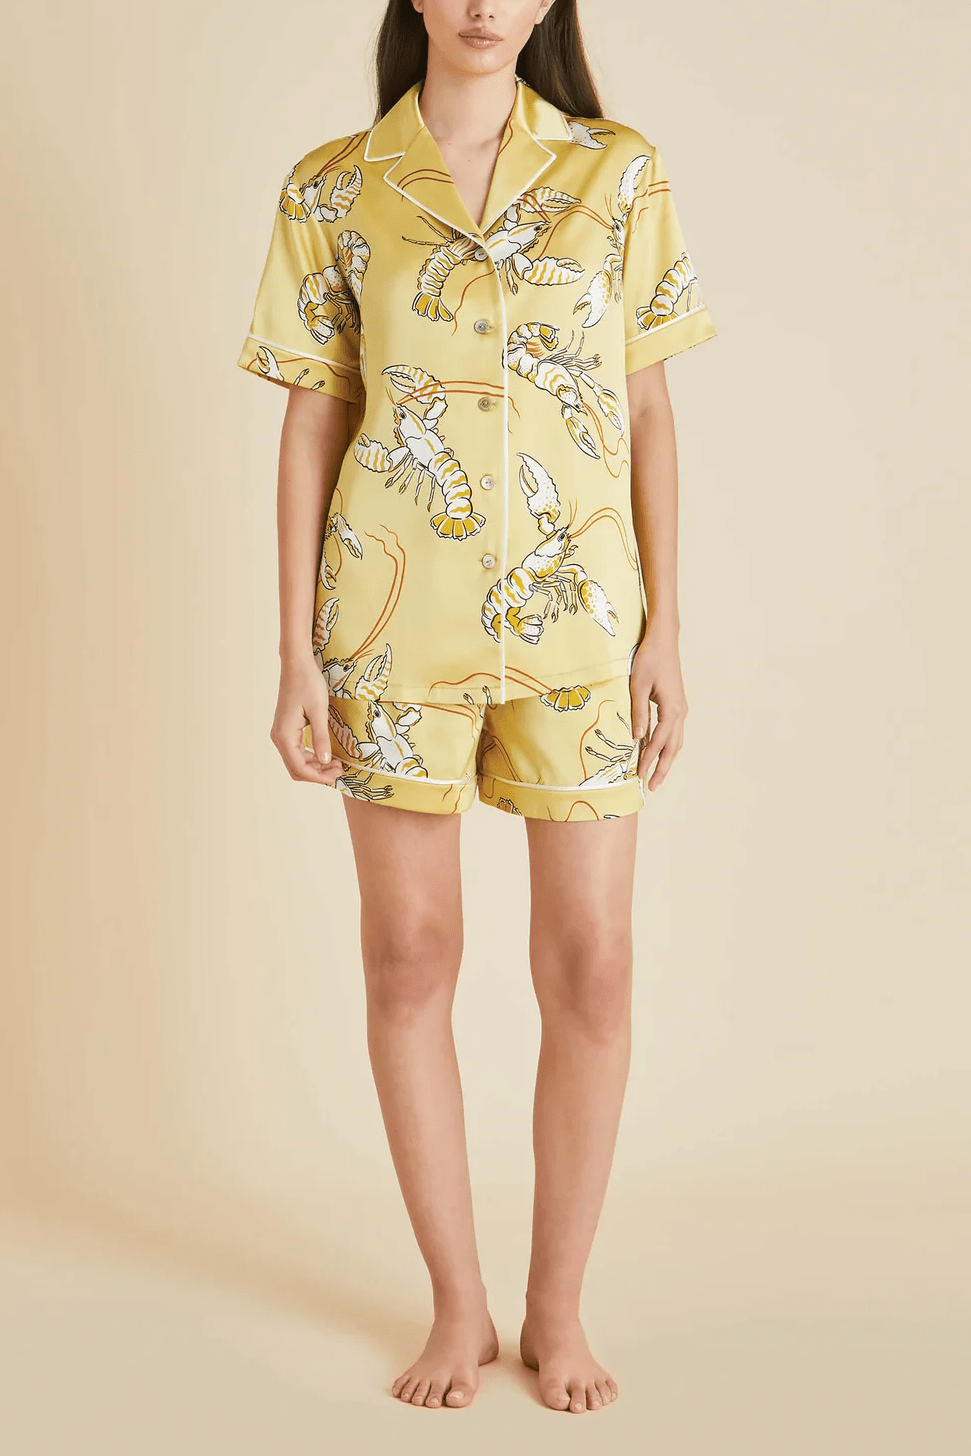 Olivia Von Halle Ingo pajamas - pajamas